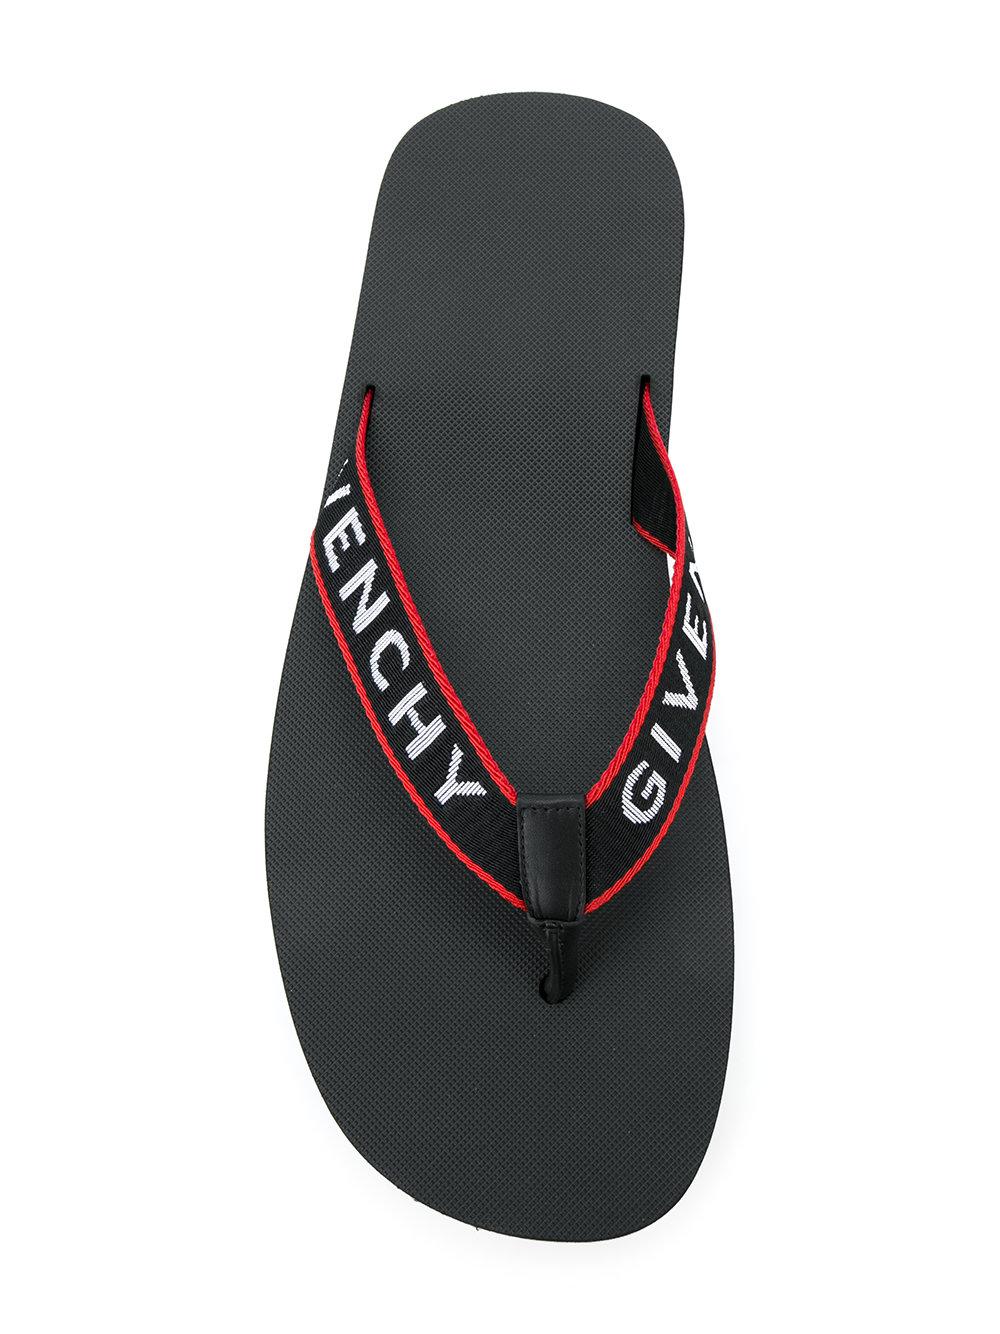 Givenchy Rubber Logo Strap Flip Flops in Black for Men - Lyst